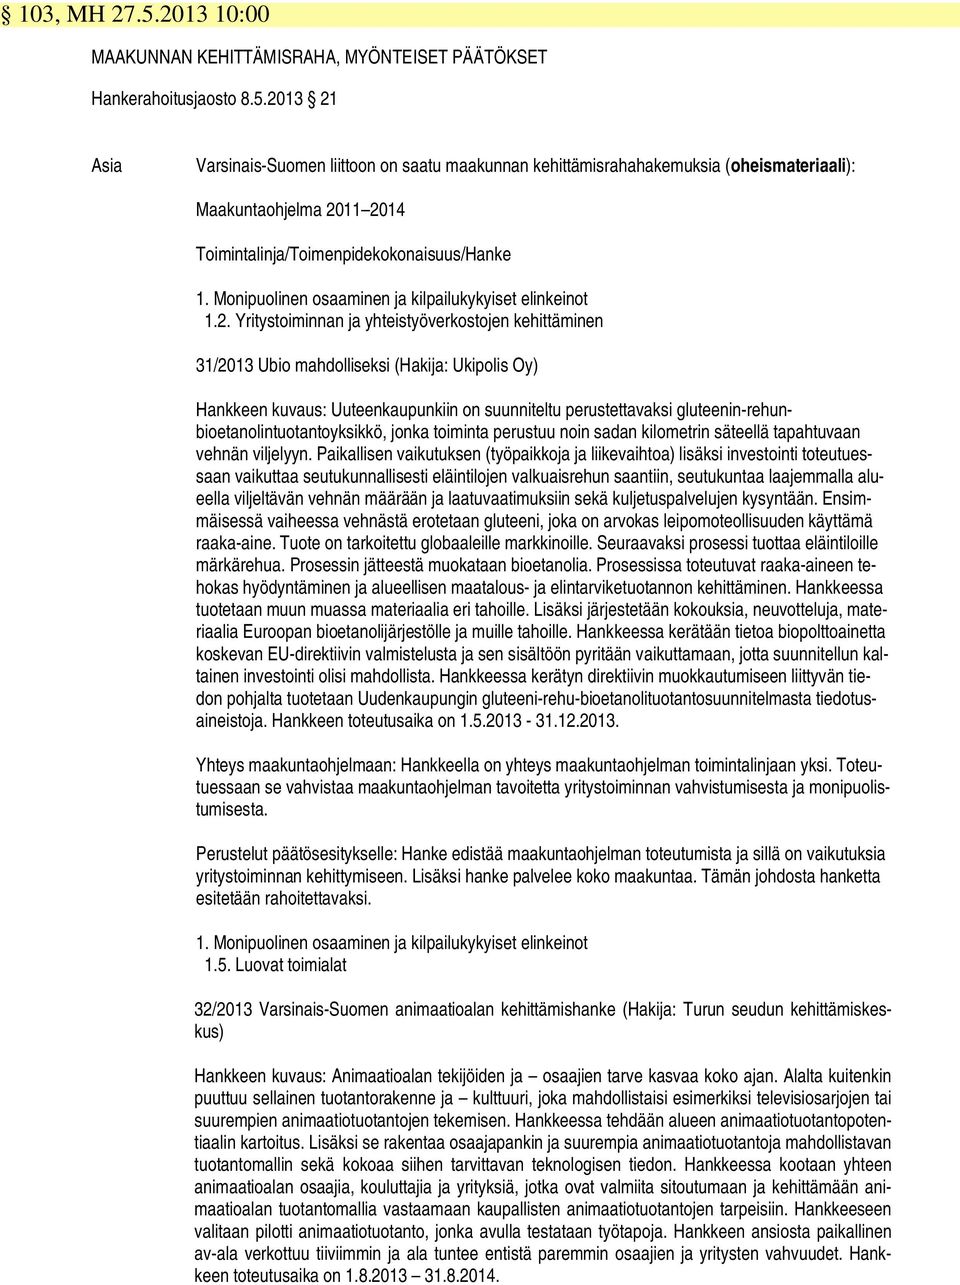 Yritystoiminnan ja yhteistyöverkostojen kehittäminen 31/2013 Ubio mahdolliseksi (Hakija: Ukipolis Oy) Hankkeen kuvaus: Uuteenkaupunkiin on suunniteltu perustettavaksi